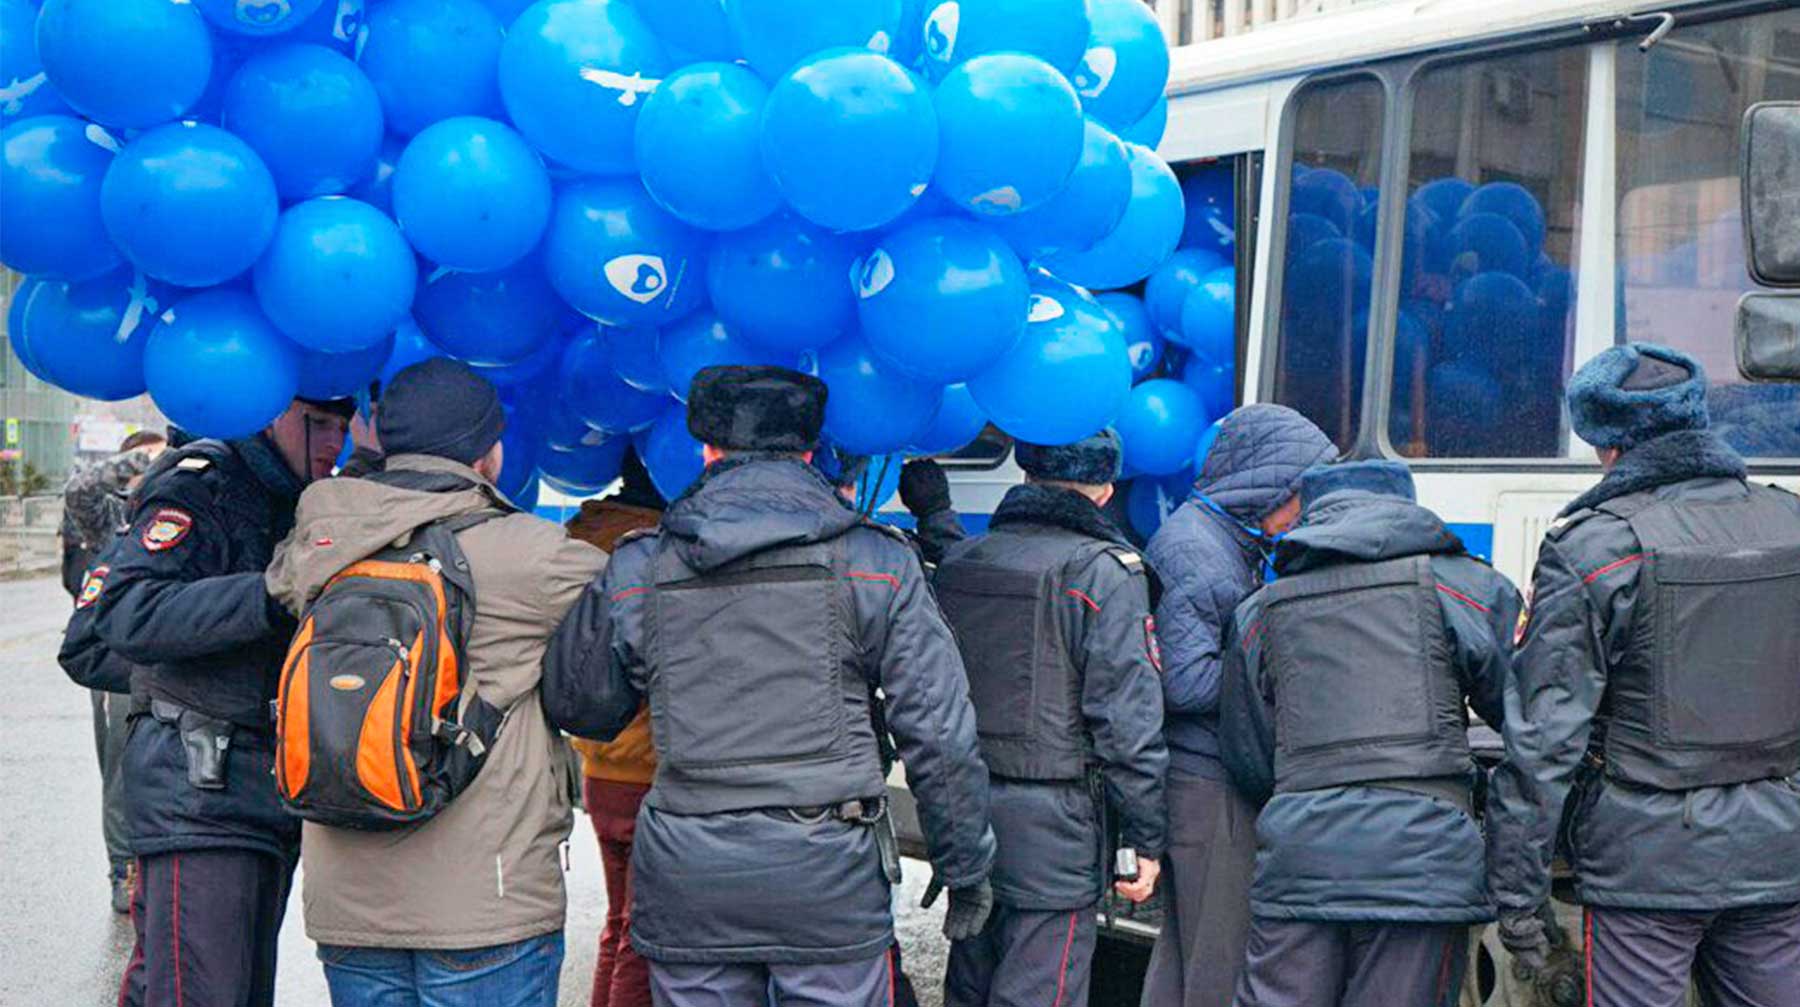 Задержанных доставили в полицию вместе с их связками воздушных шаров undefined